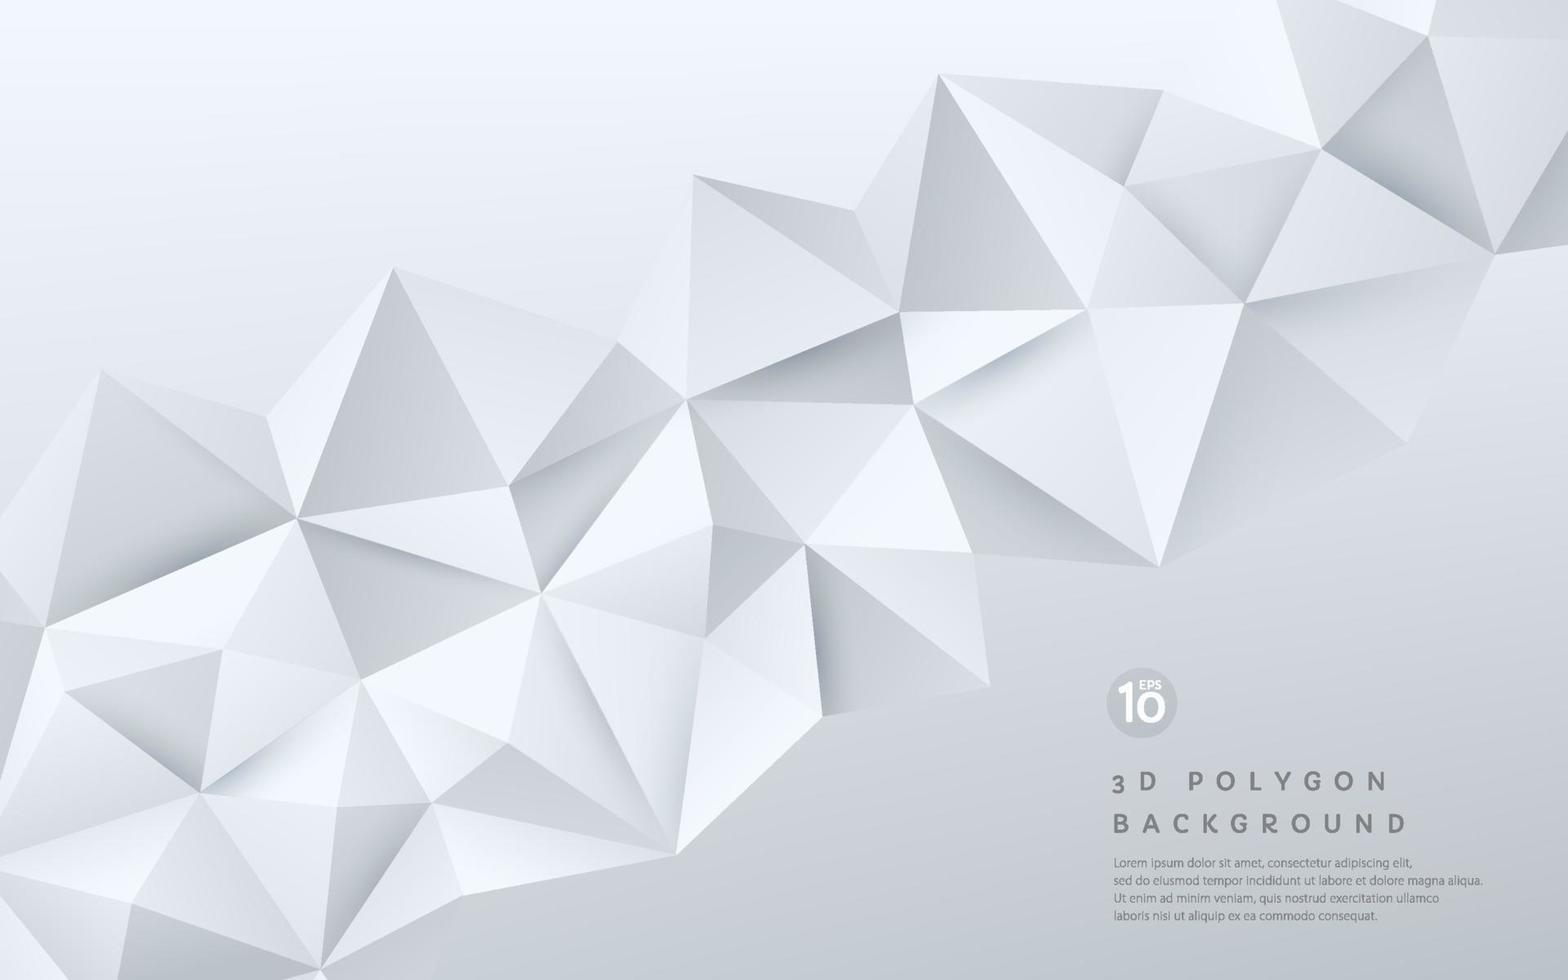 patrón poligonal geométrico blanco y plateado degradado 3d abstracto sobre fondo blanco con espacio de copia. puede usar para portada, afiche, banner web, volante, página de destino, anuncio impreso. eps10 vectoriales vector